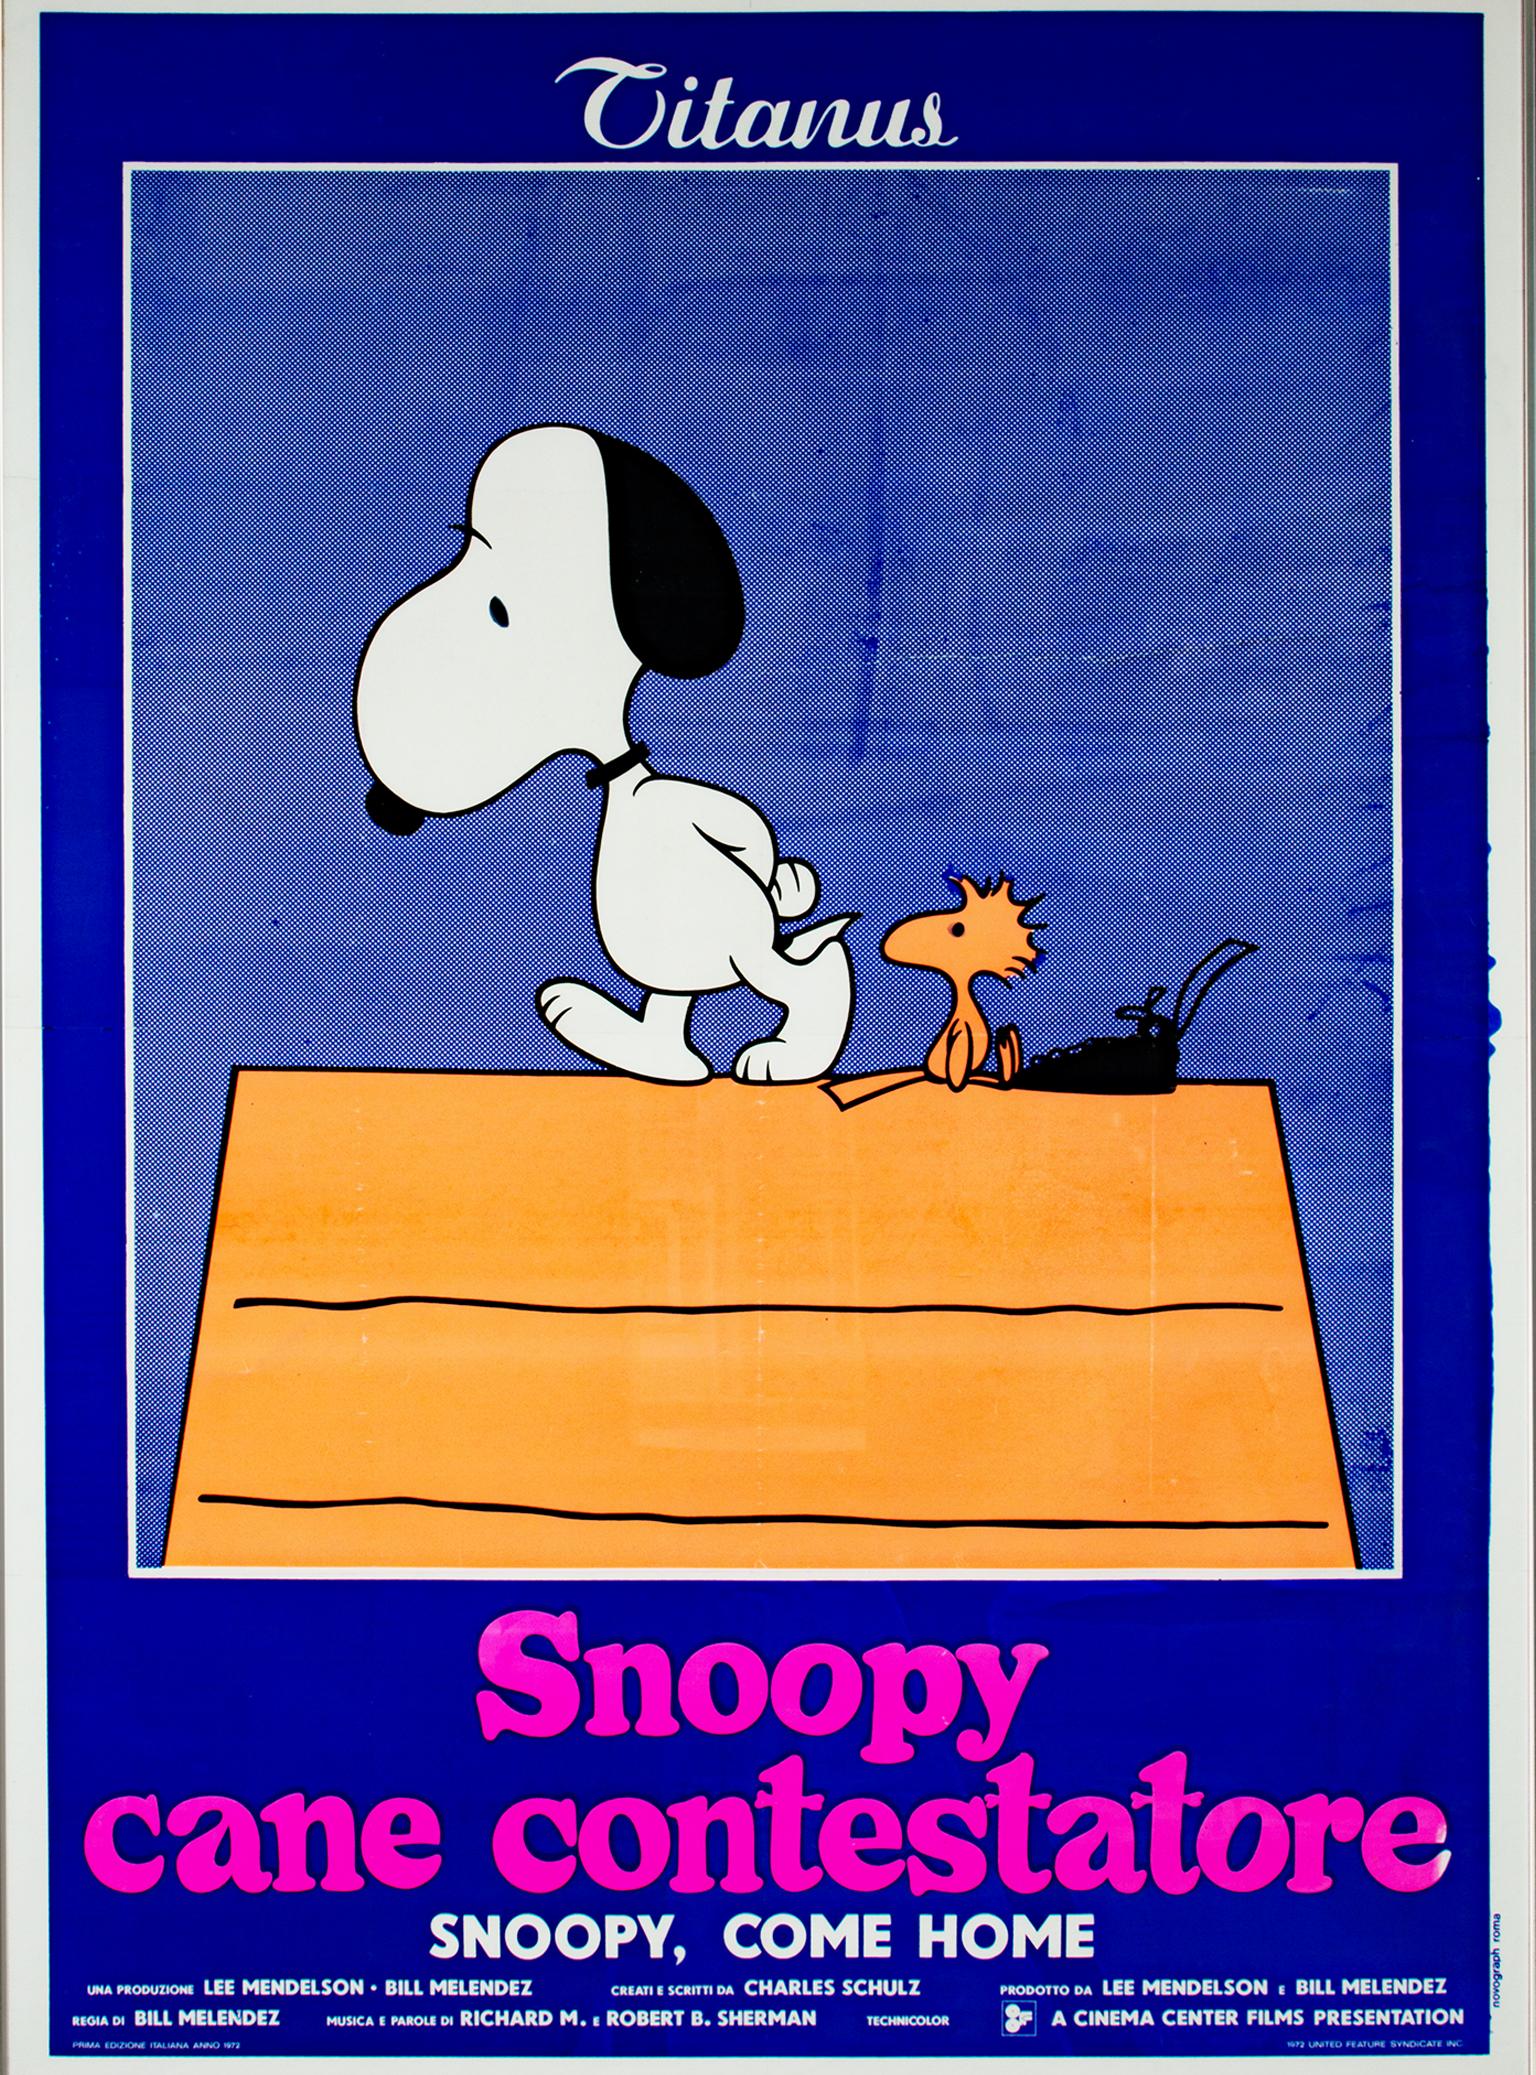 "Snoopy Come Home", Affiche de lithographie originale de Charles Schulz